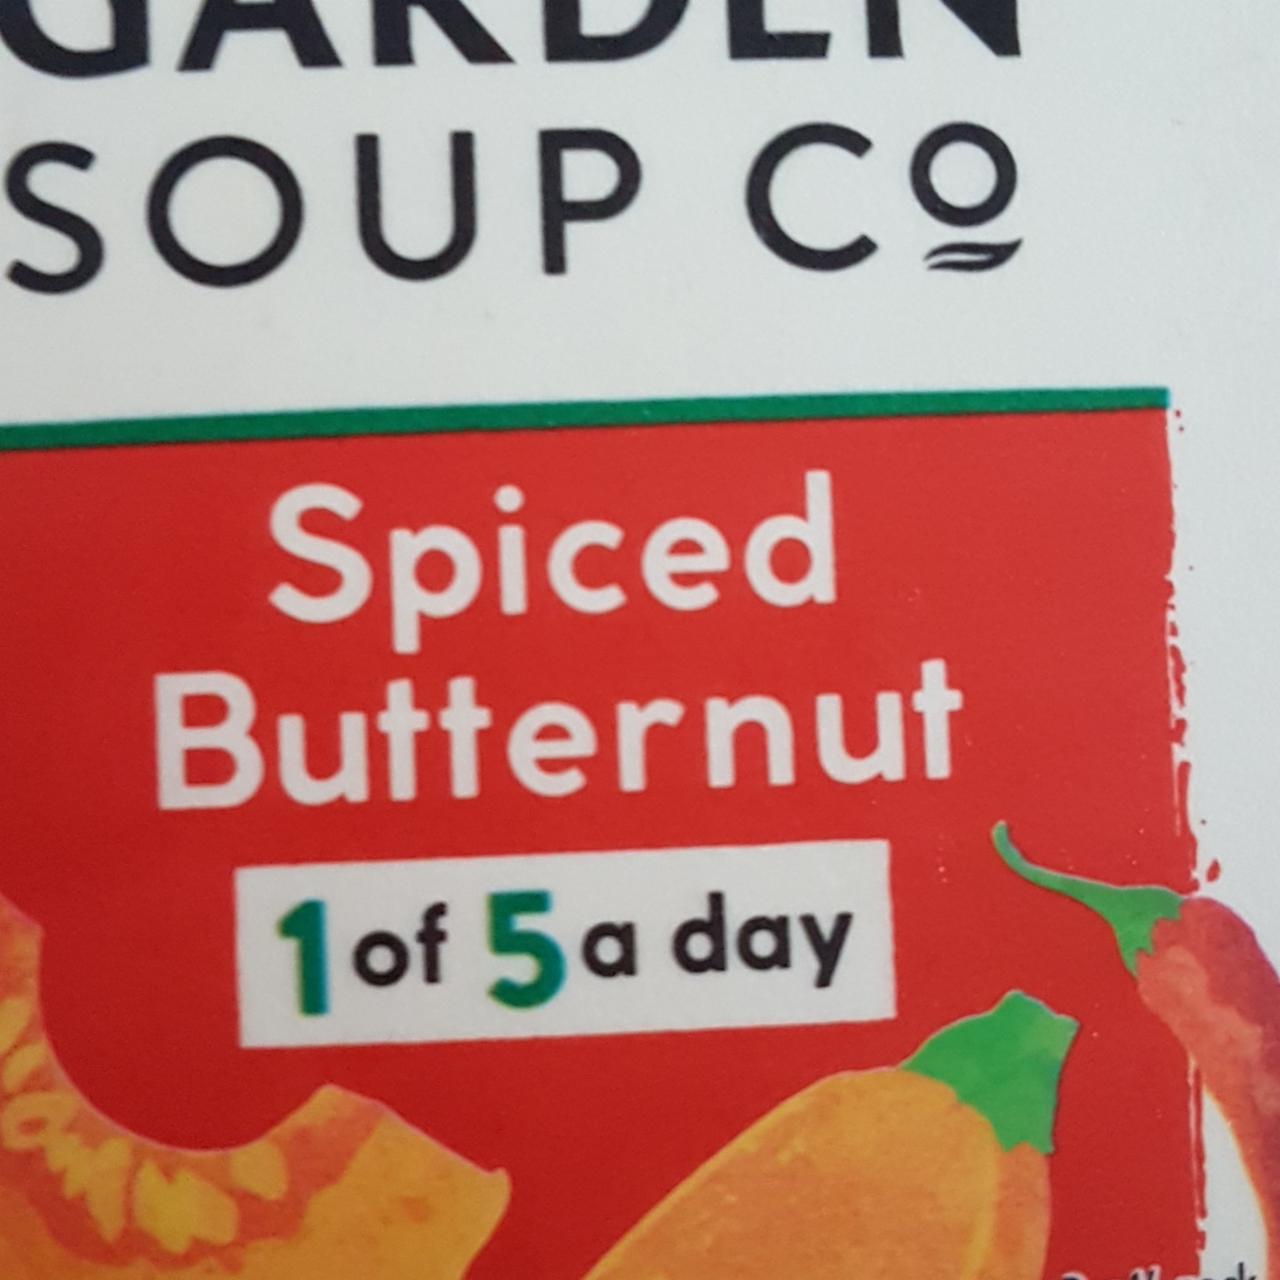 Fotografie - Spiced Butternut New Covent Garden Soup